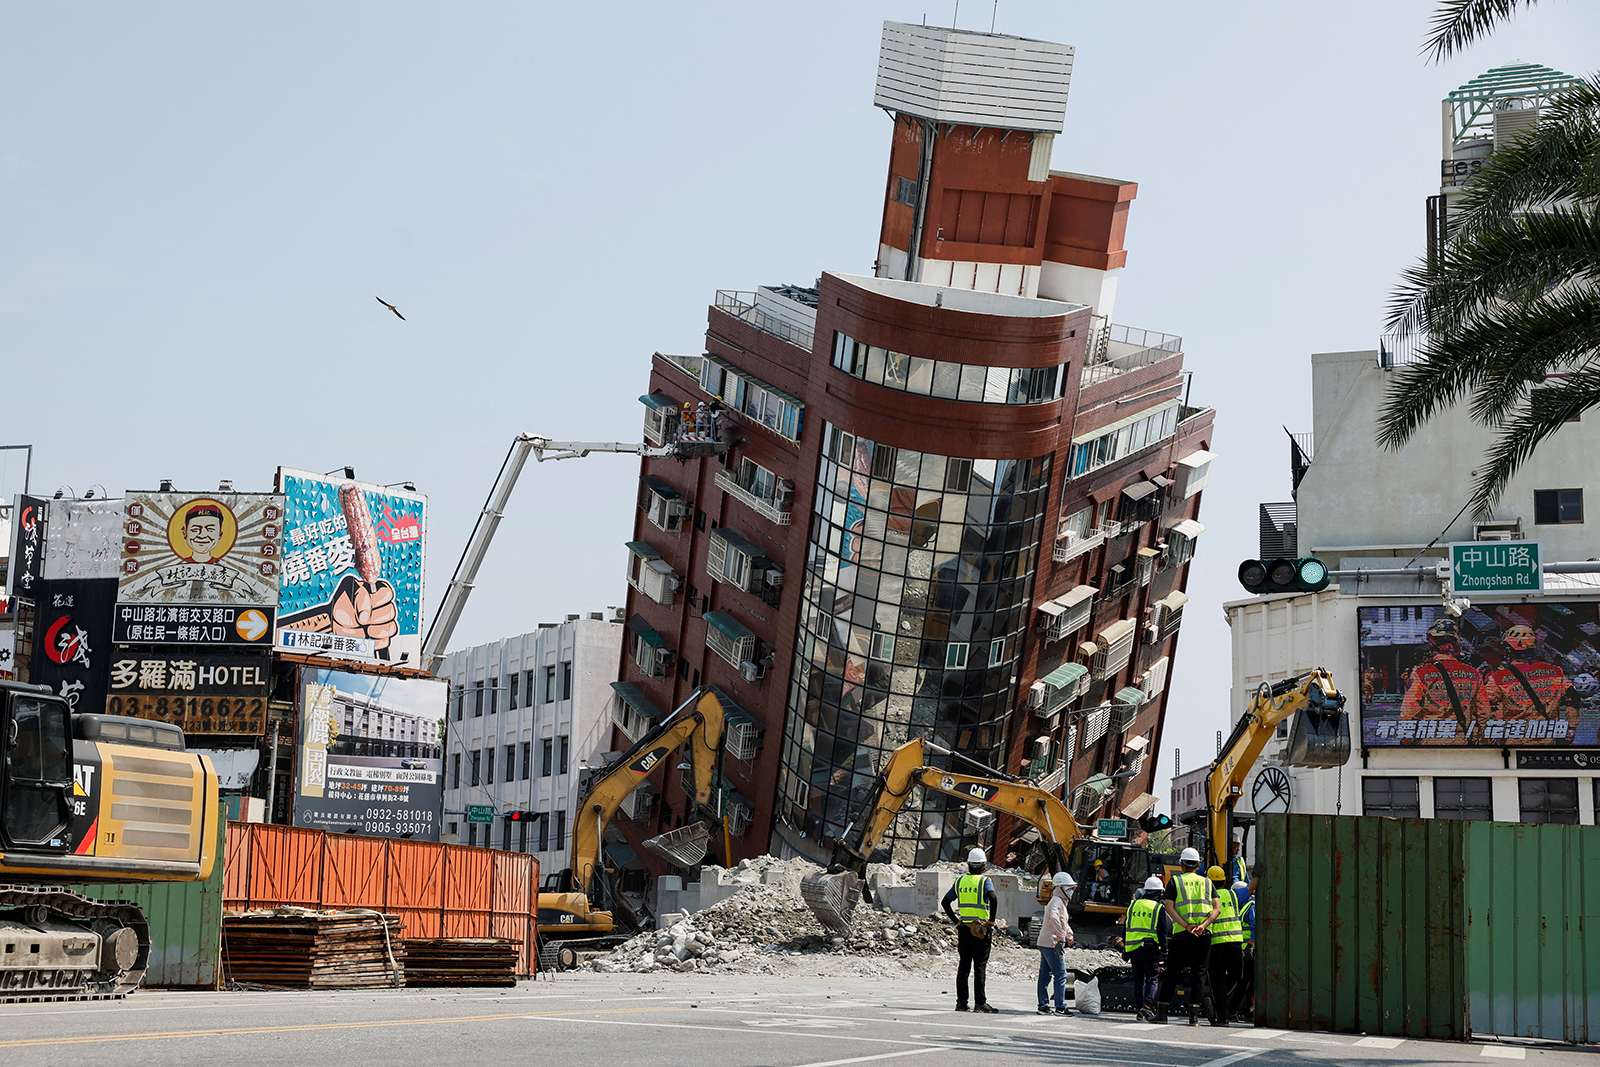 Ein teilweise eingestürztes Gebäude steht in einem schrägen Winkel, während Arbeiter einen Tag nach einem starken Erdbeben in der Stadt Hualien im Osten Taiwans am 4. April Arbeiten durchführen.